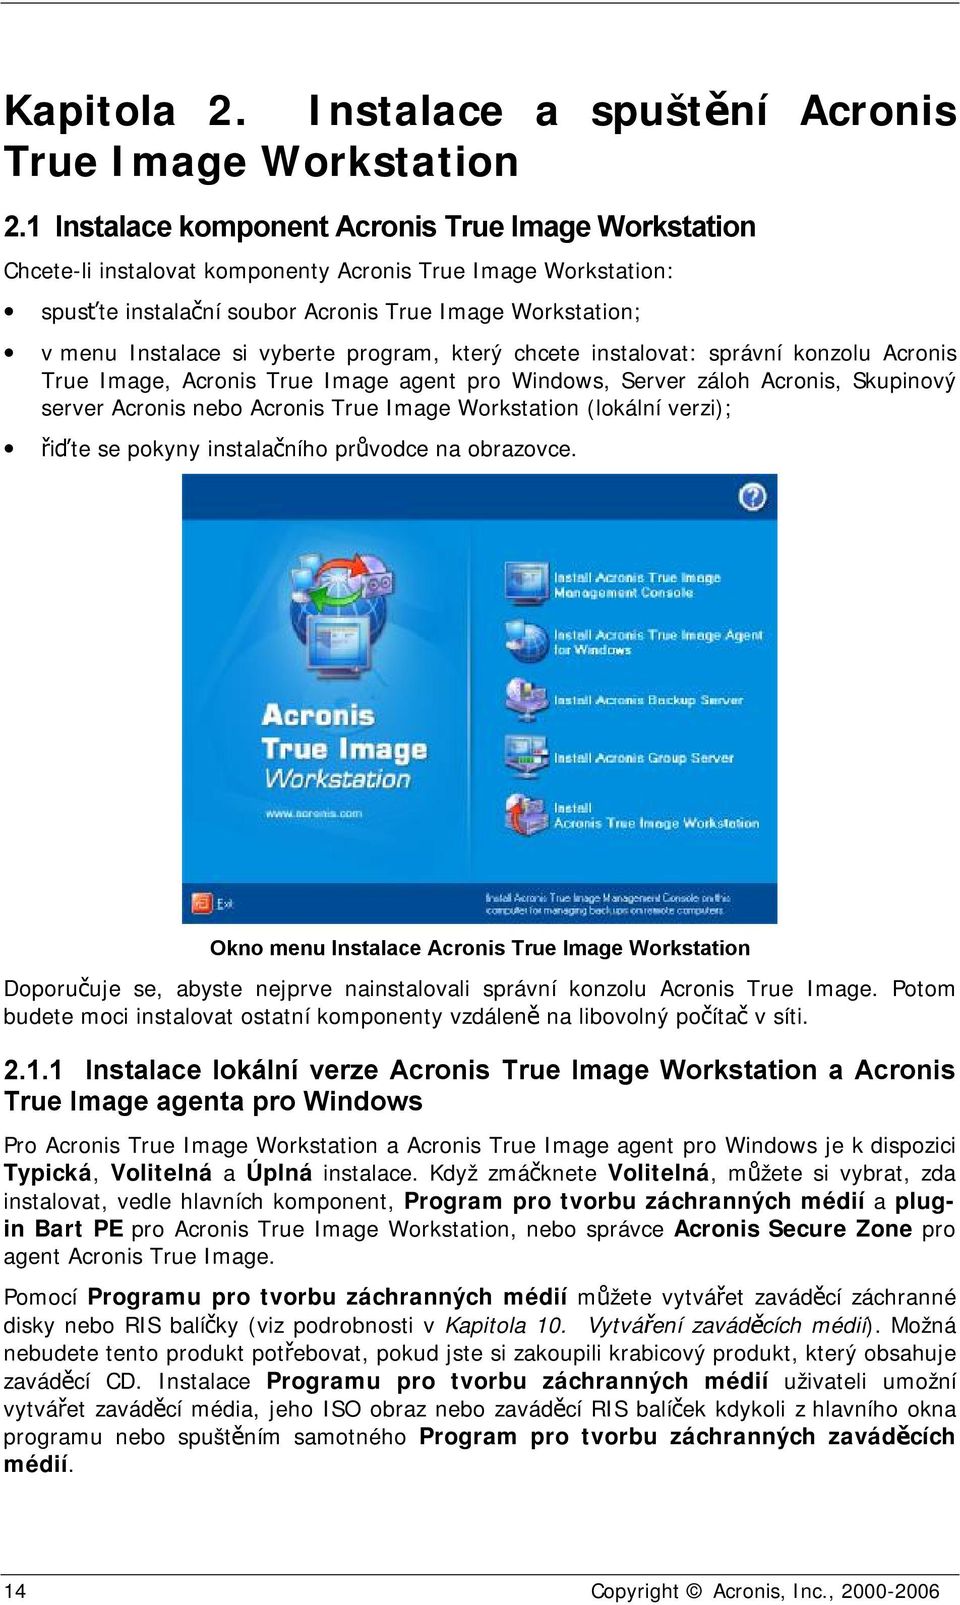 vyberte program, který chcete instalovat: správní konzolu Acronis True Image, Acronis True Image agent pro Windows, Server záloh Acronis, Skupinový server Acronis nebo Acronis True Image Workstation